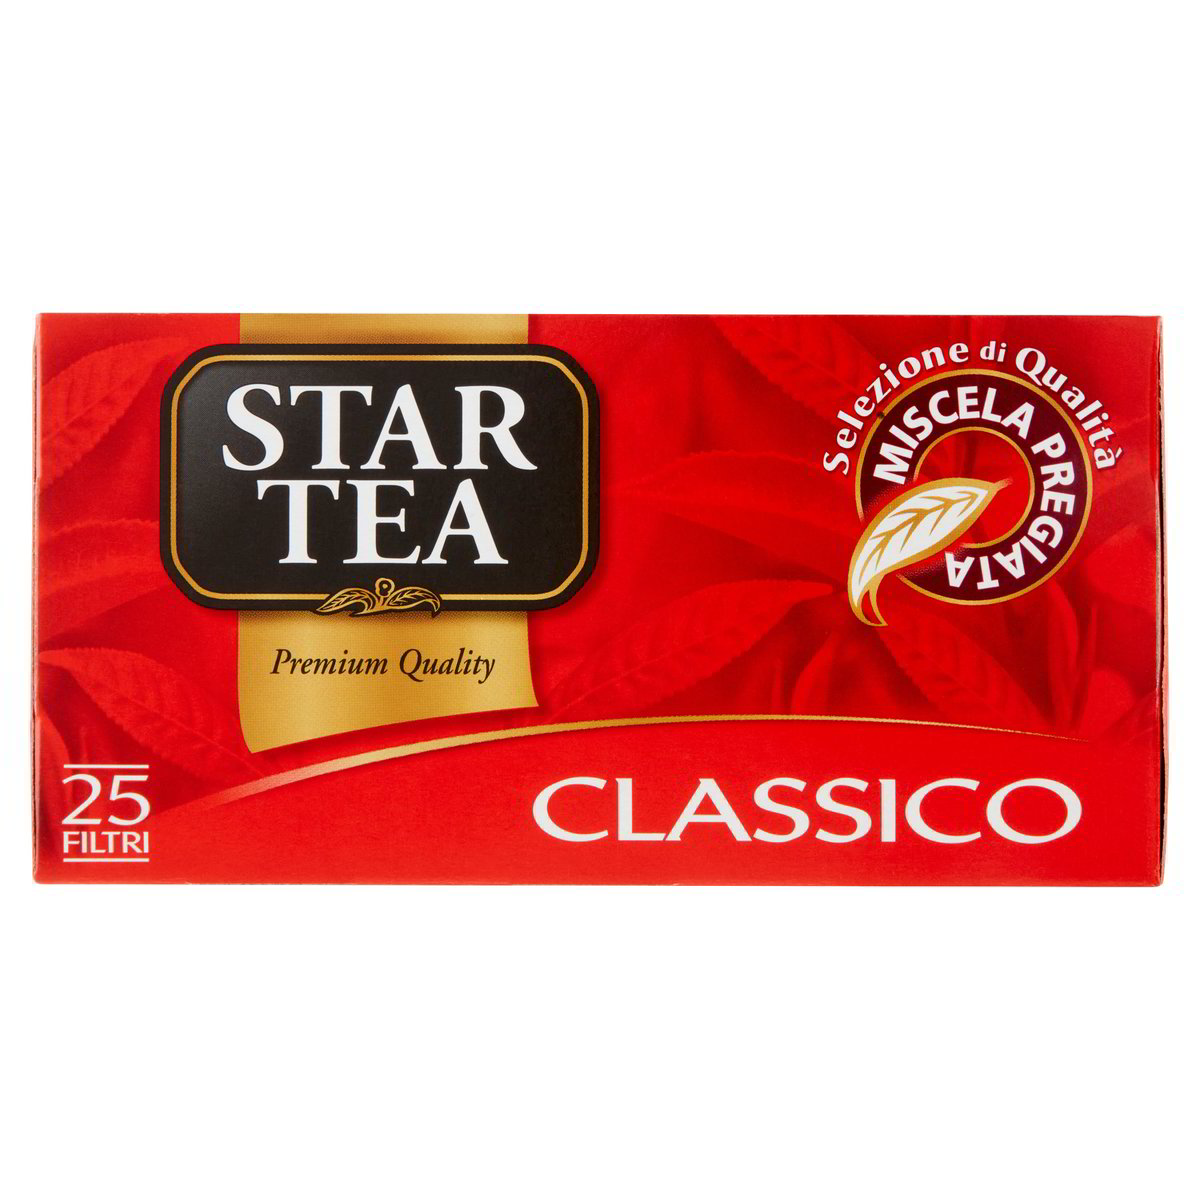 Star Tea Tè classico